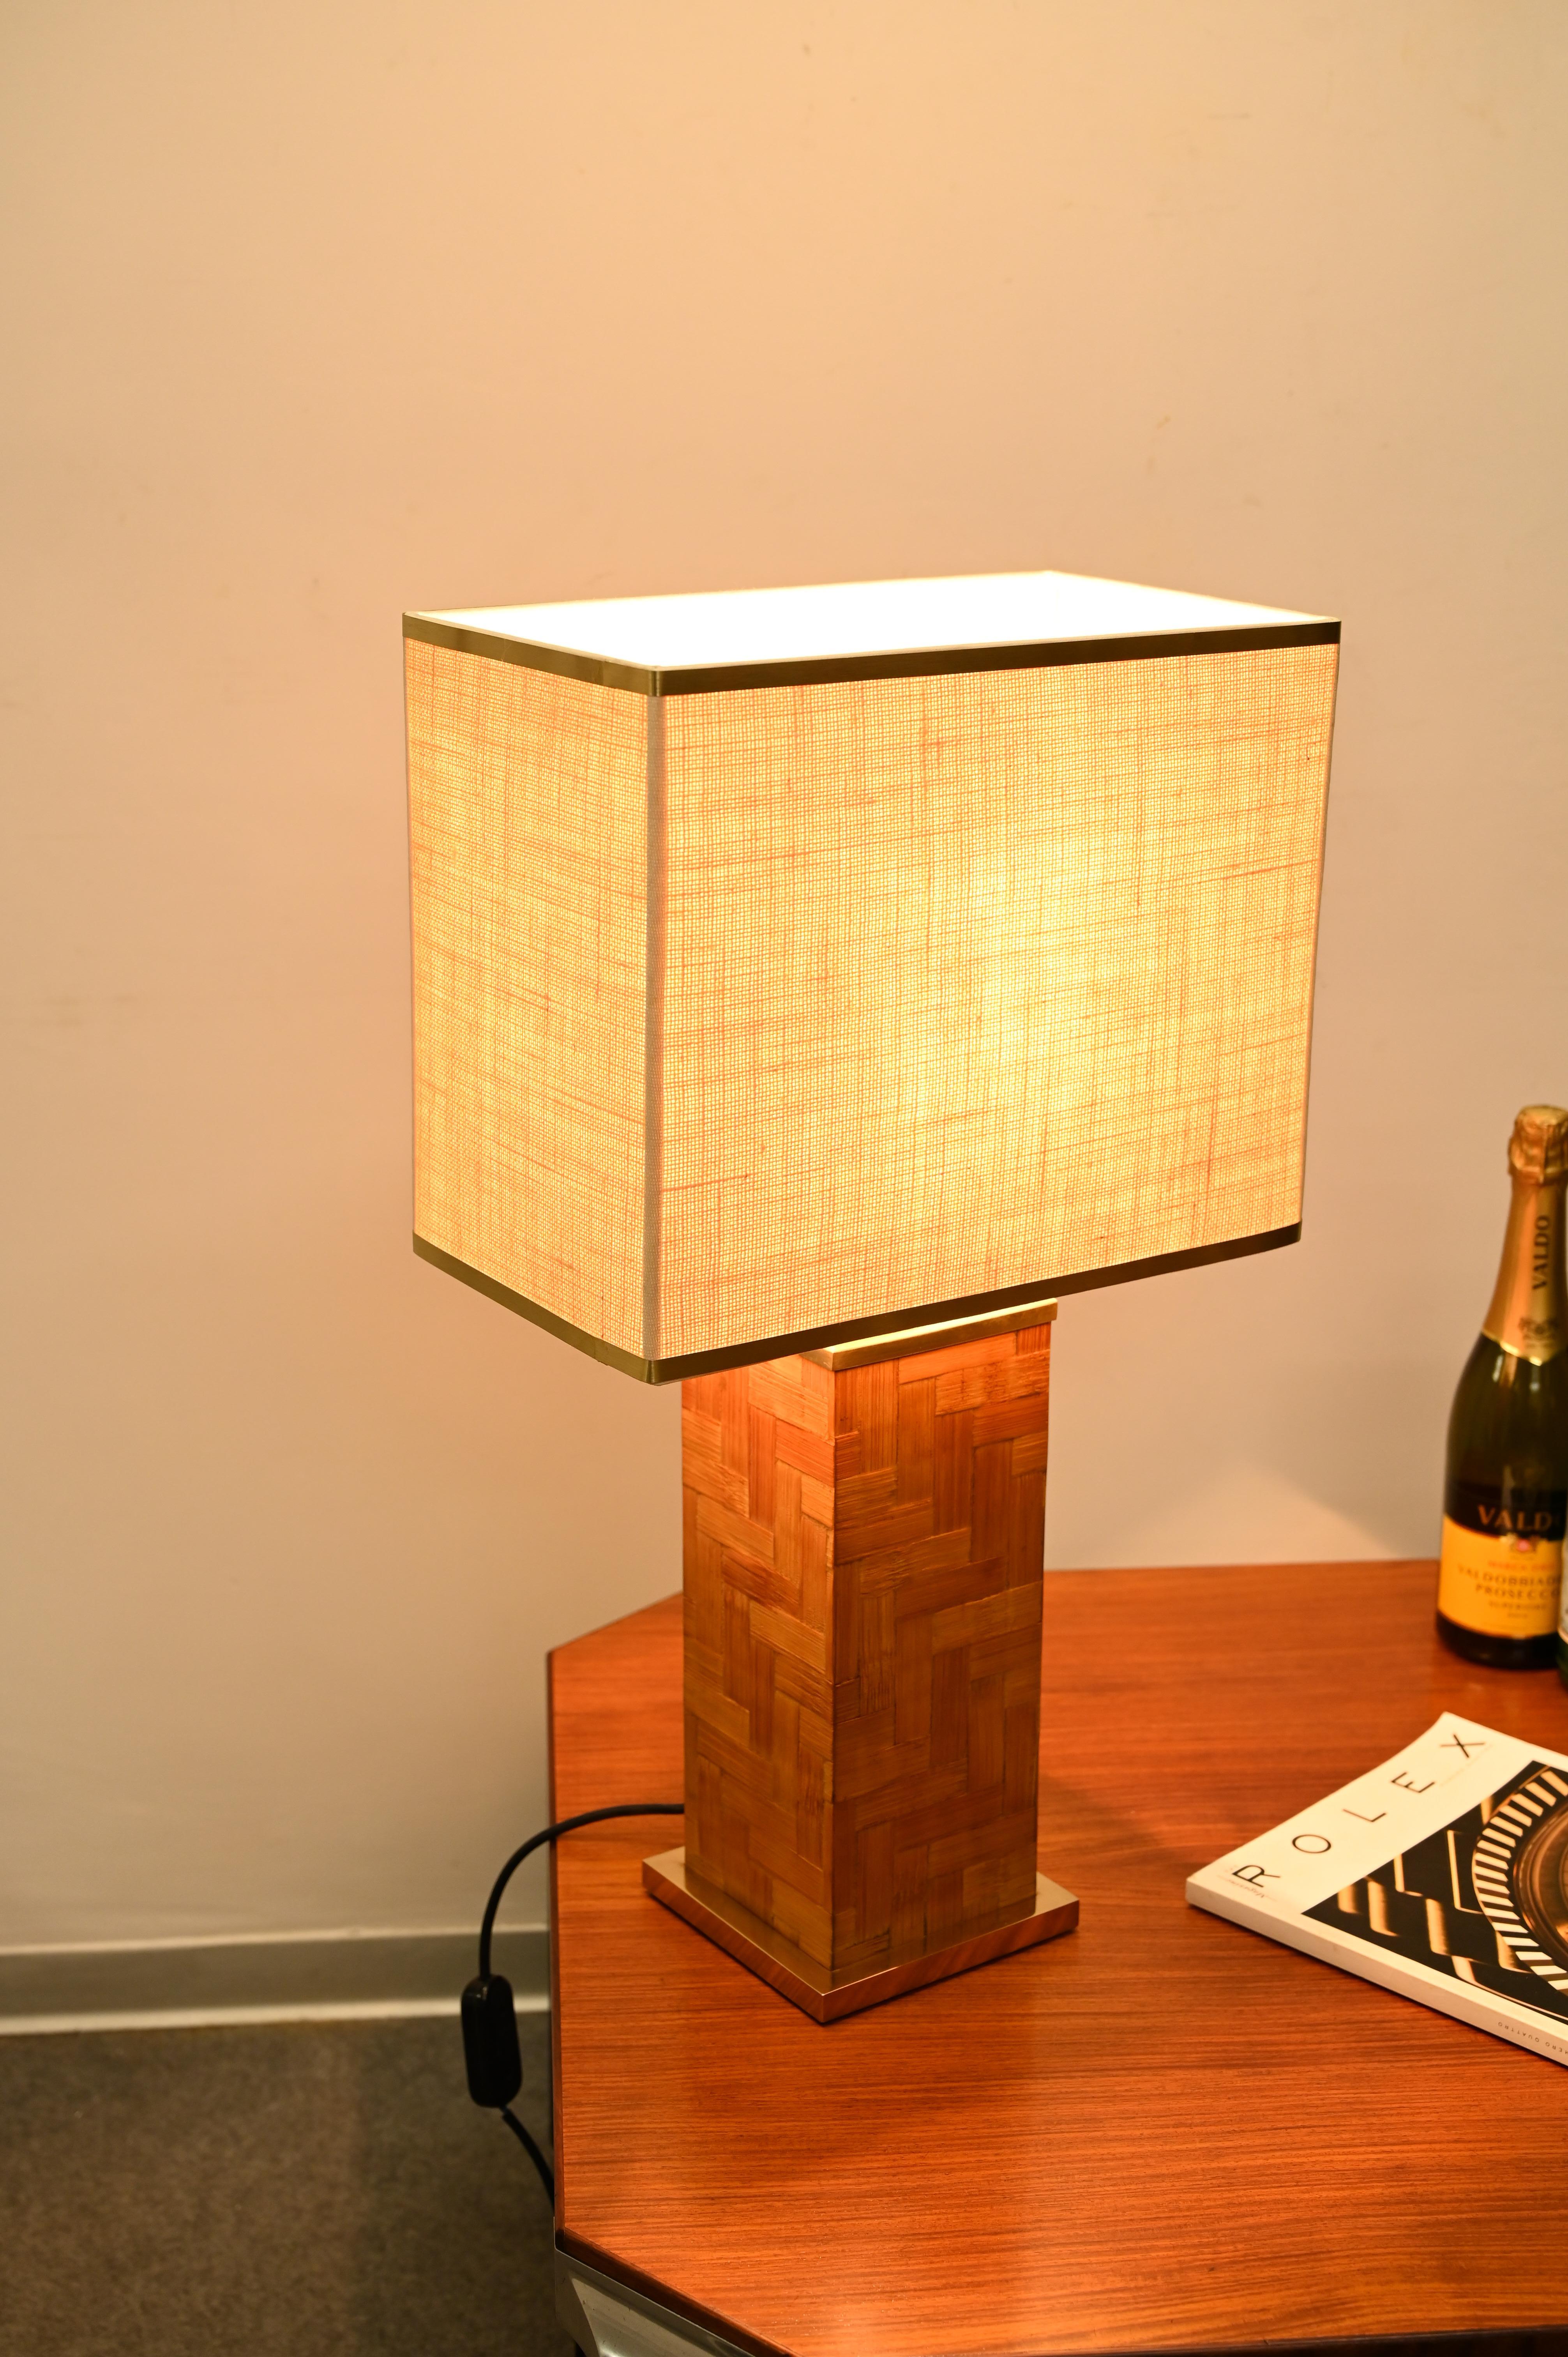 Merveilleuse lampe de table carrée en laiton et rotin, fabriquée avec une excellente qualité de fabrication. Cette magnifique lampe a été produite par Tommaso Barbi en Italie dans les années 1970.

La lampe est dotée d'une base carrée en laiton poli